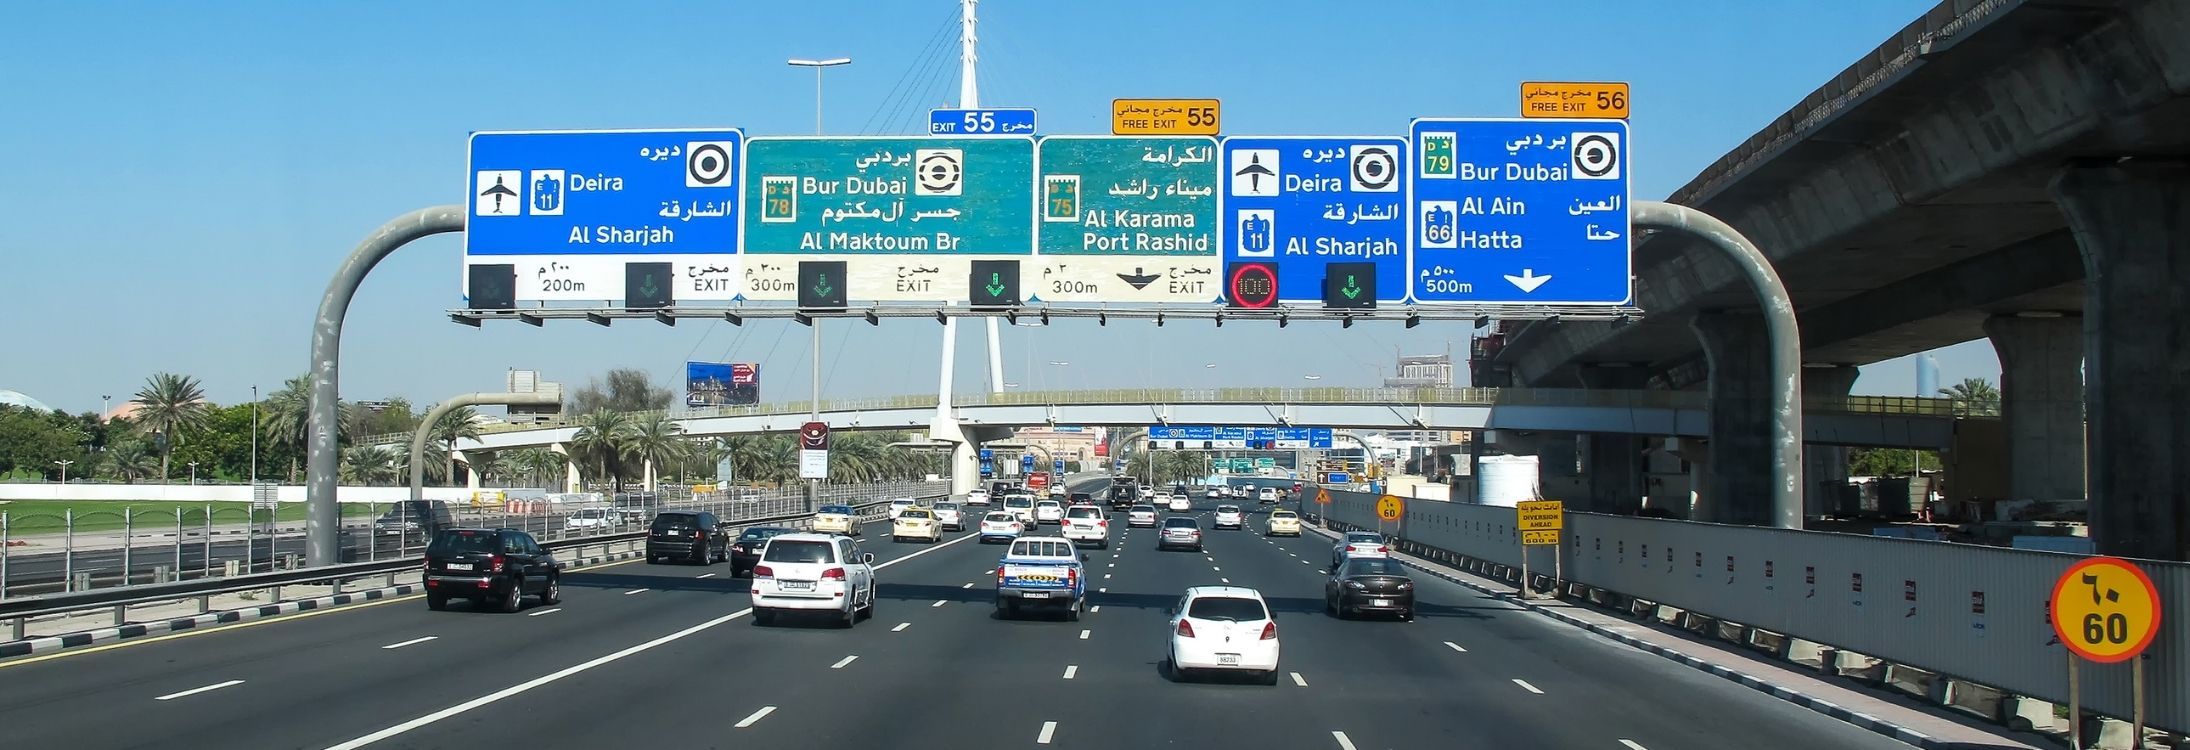 Car Rentals In Dubai